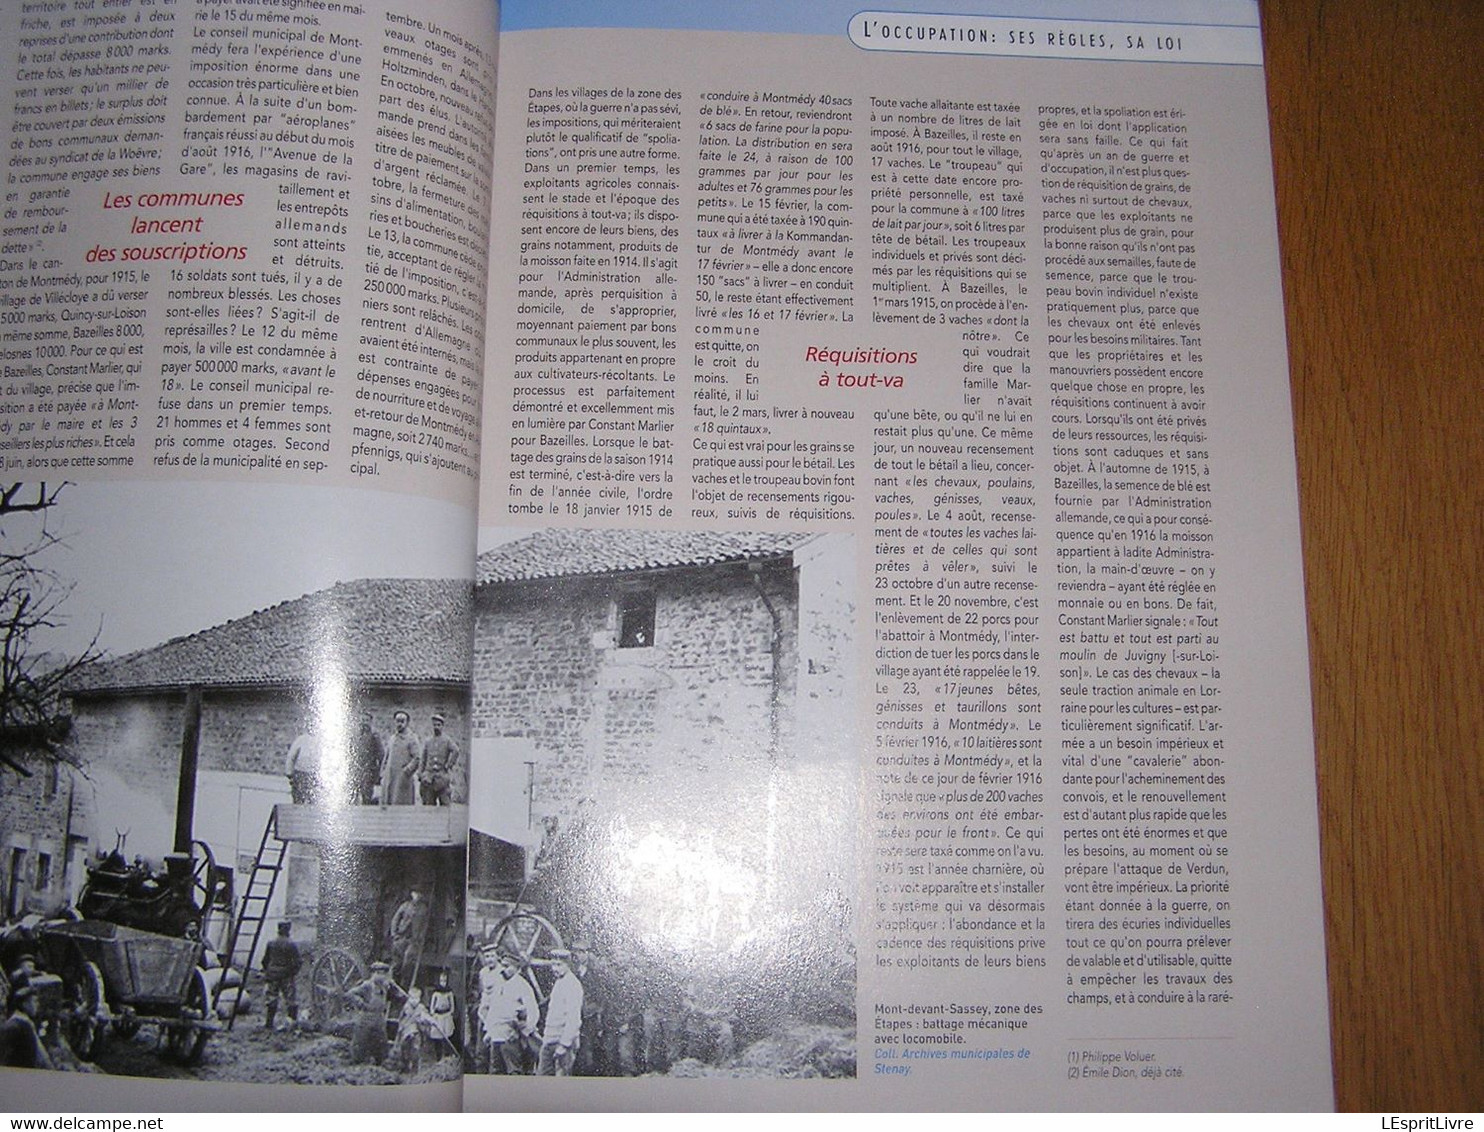 14 18 Le Magazine de la Grande Guerre N° 45 Occupation Allemande Meuse Occupée Ypres Ieper 1 è Armée Artisanat Tranchée